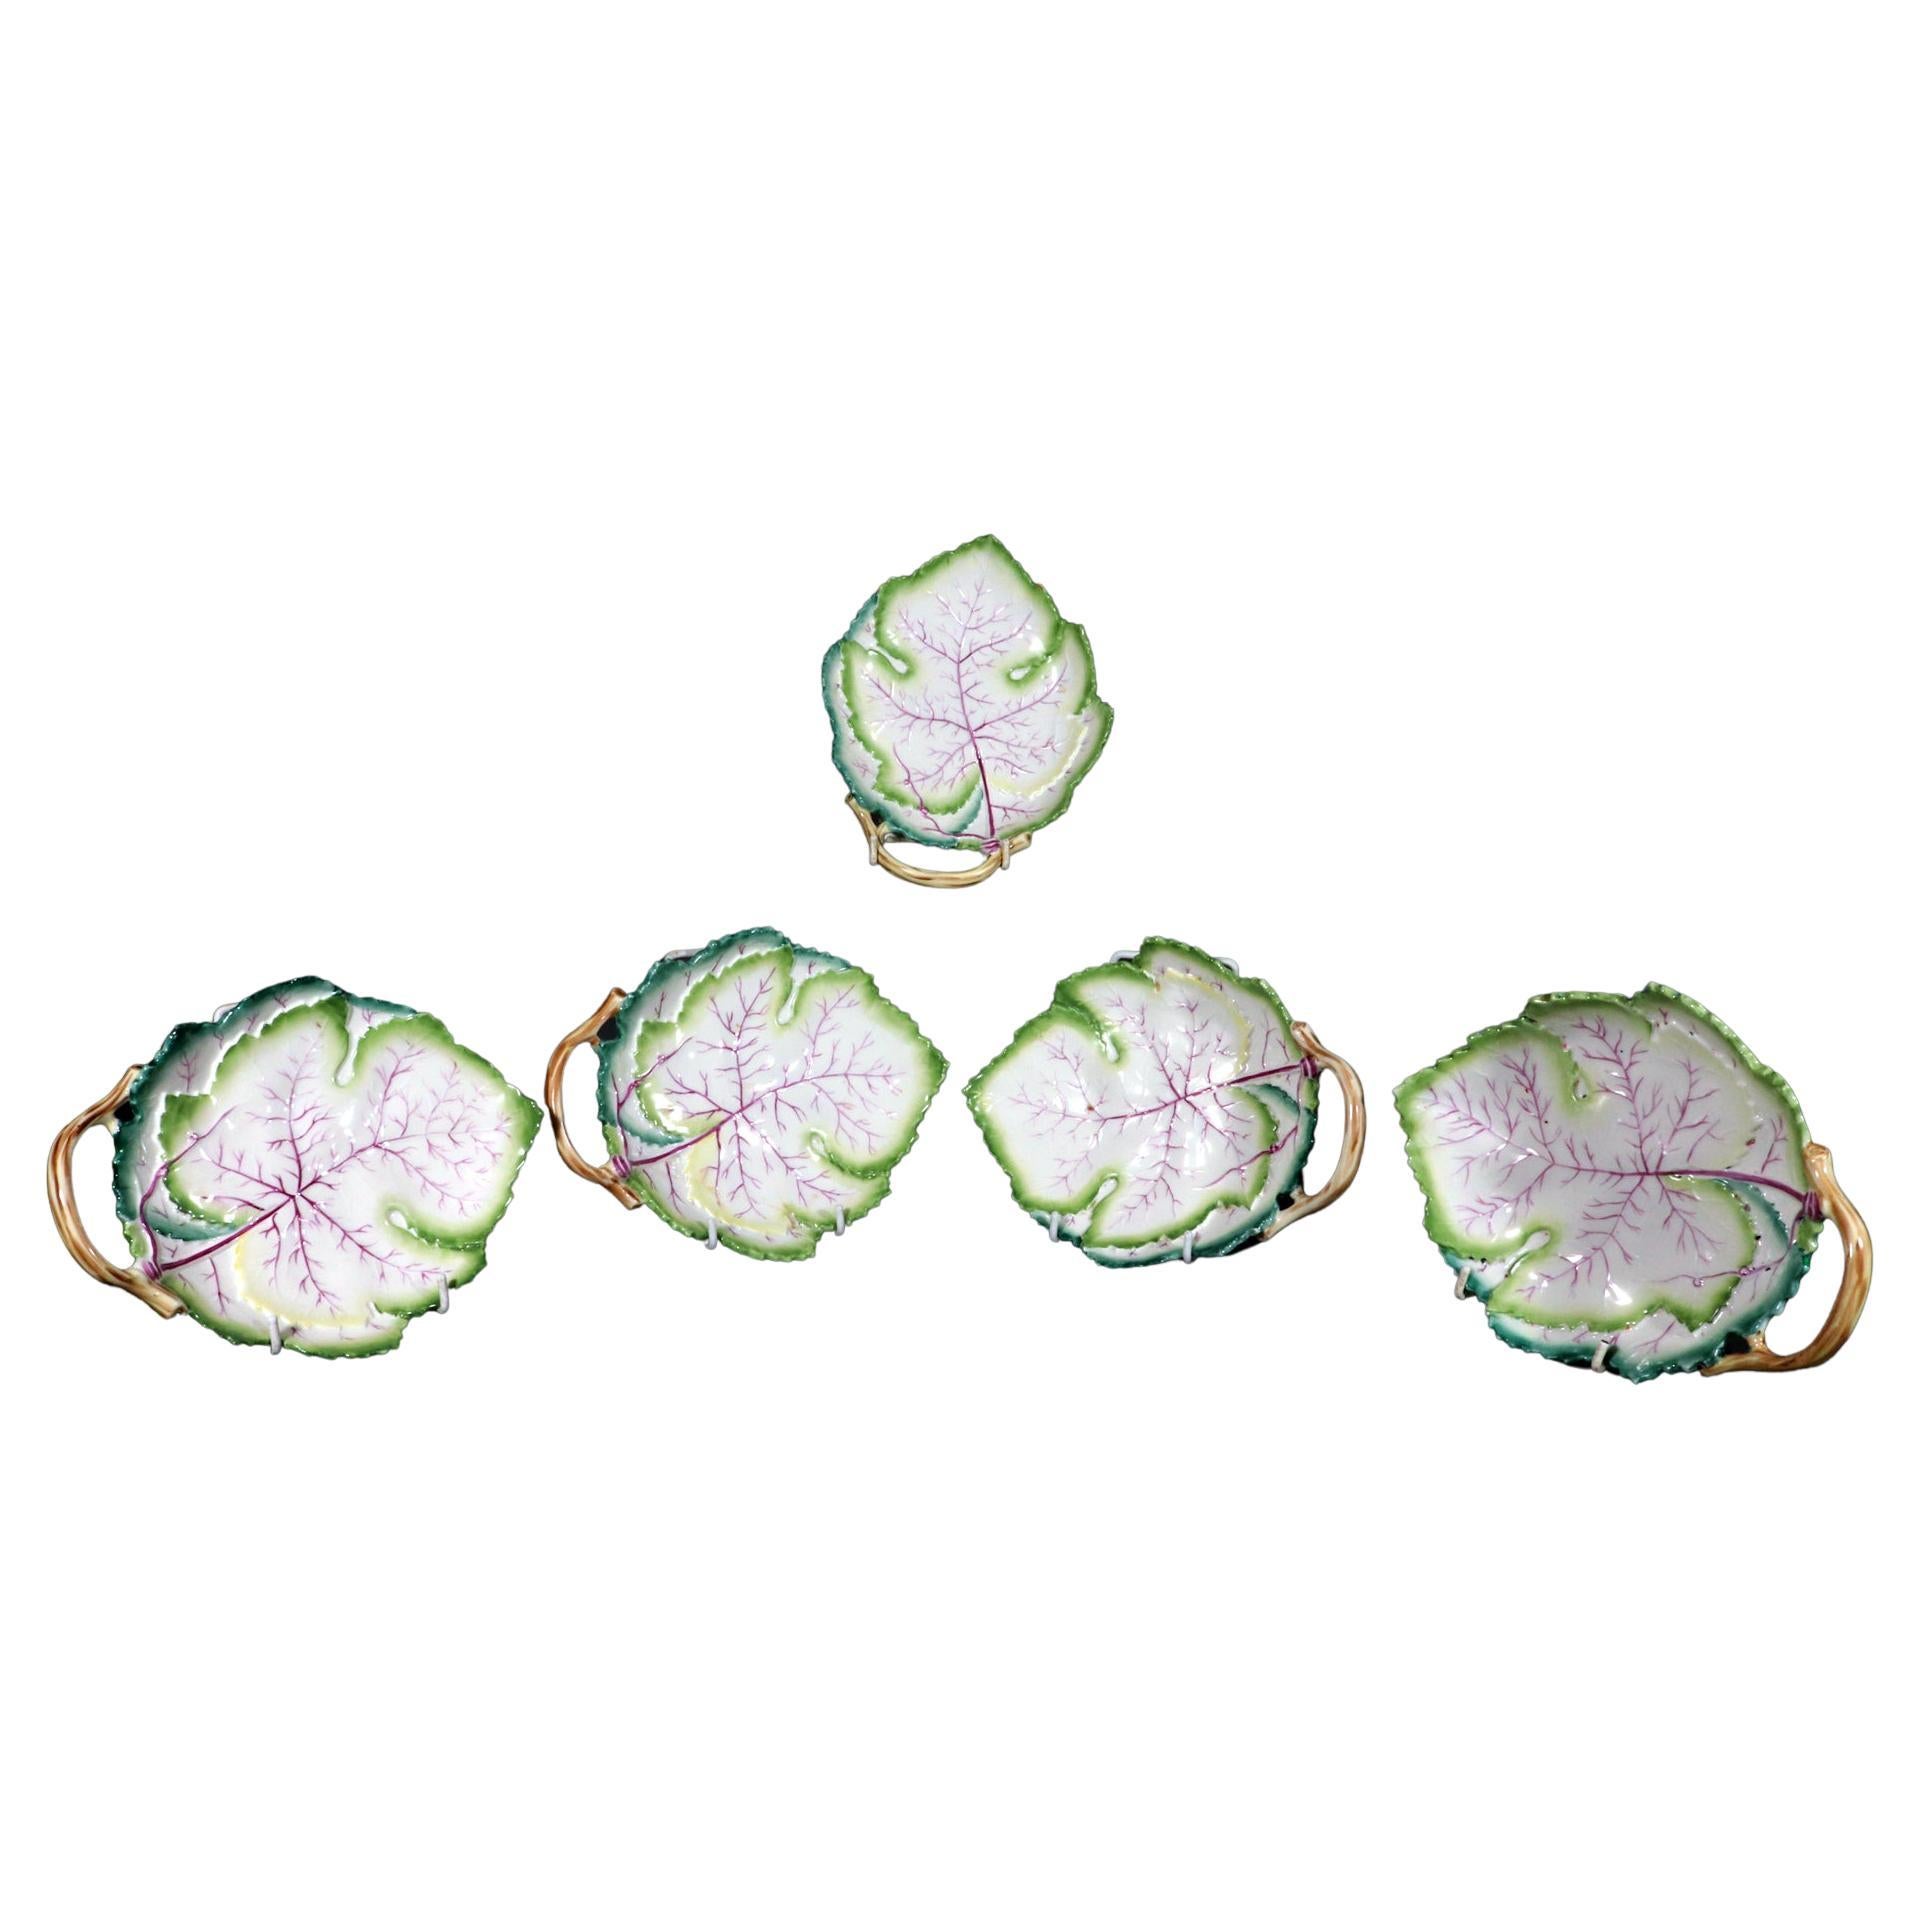 Royal Worcester Bone China Porcelain Leaf-shaped Dishes, Pattern 3628 For Sale